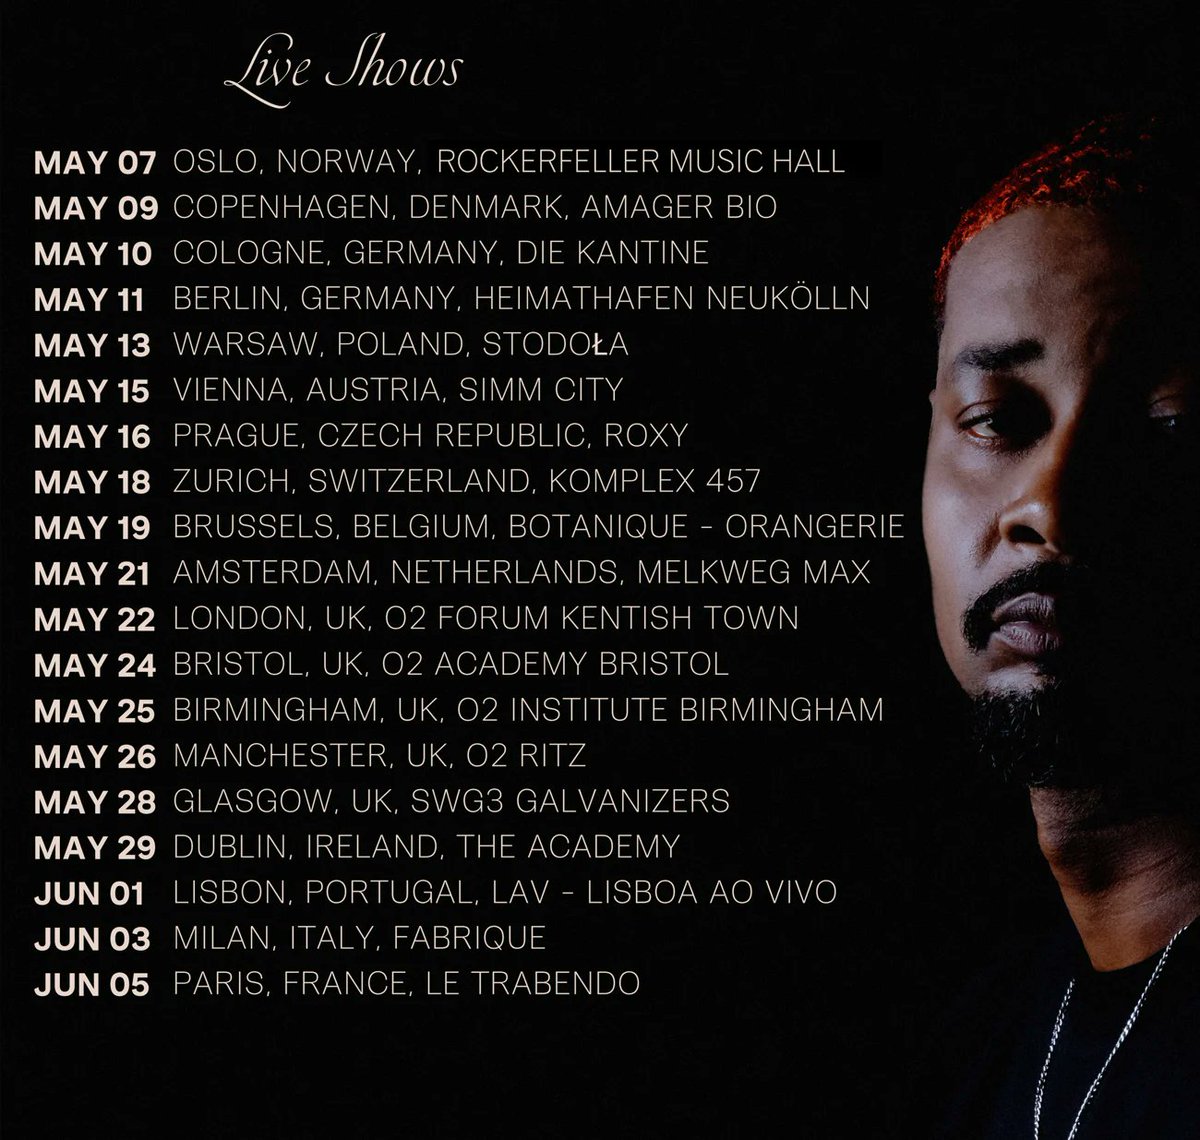 .@xdannyxbrownx's #QUARANTA EU/UK tour starts next week 🏆